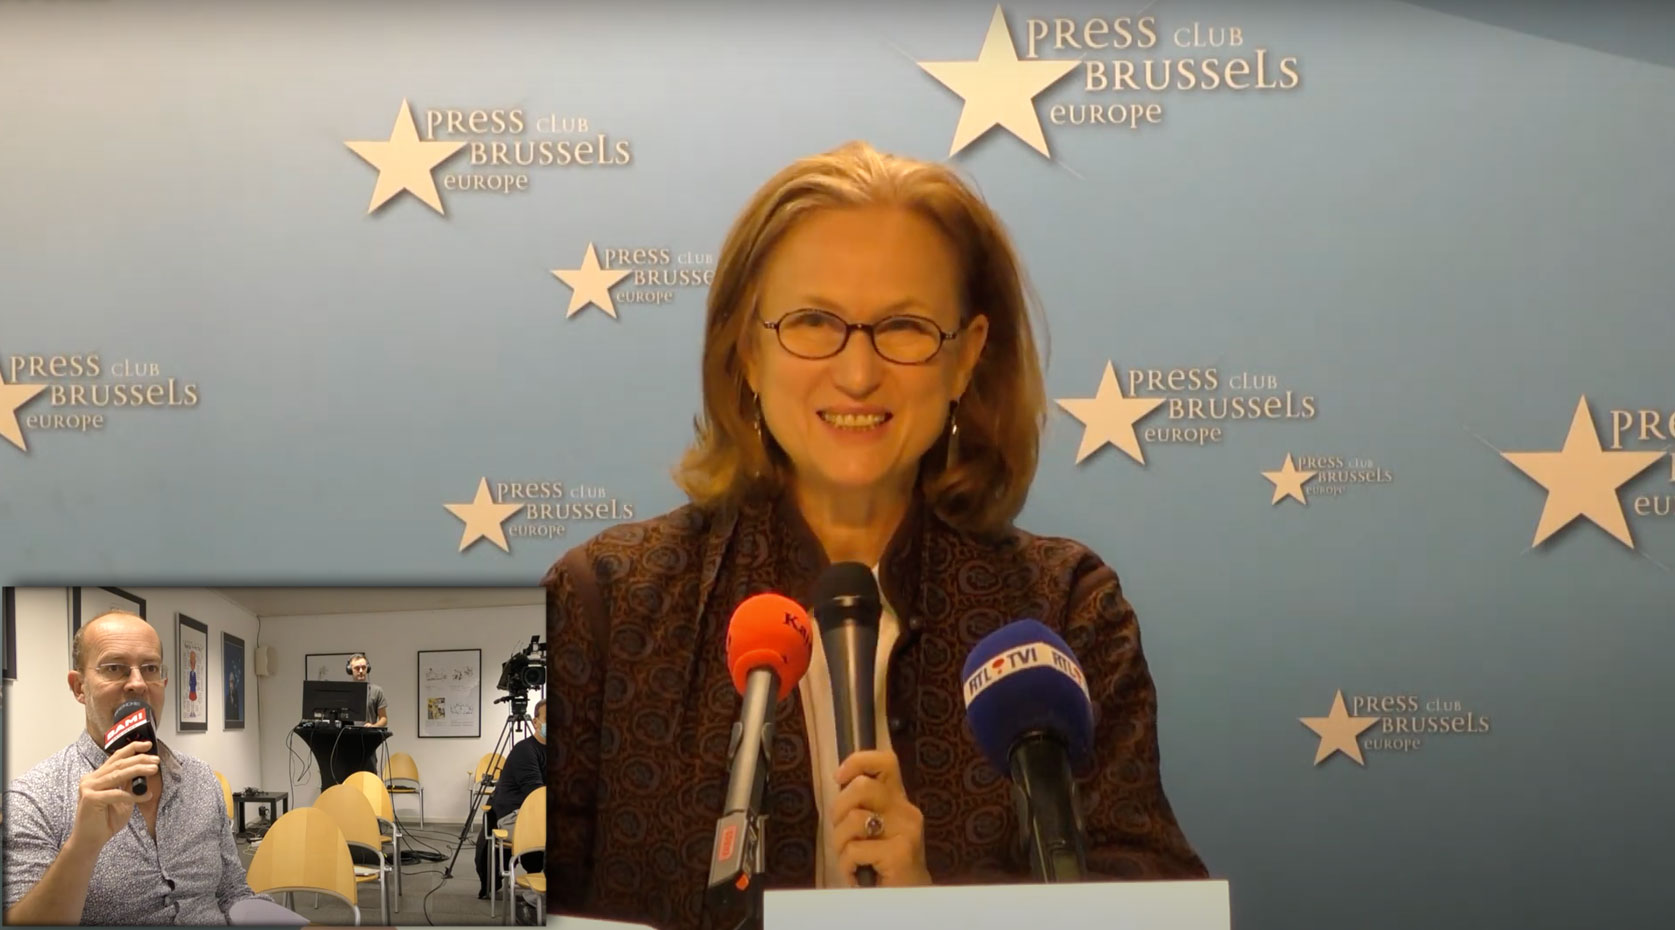 Conférence de presse - Action en cessation contre le gouvernement belge pour Incitation à la haine”